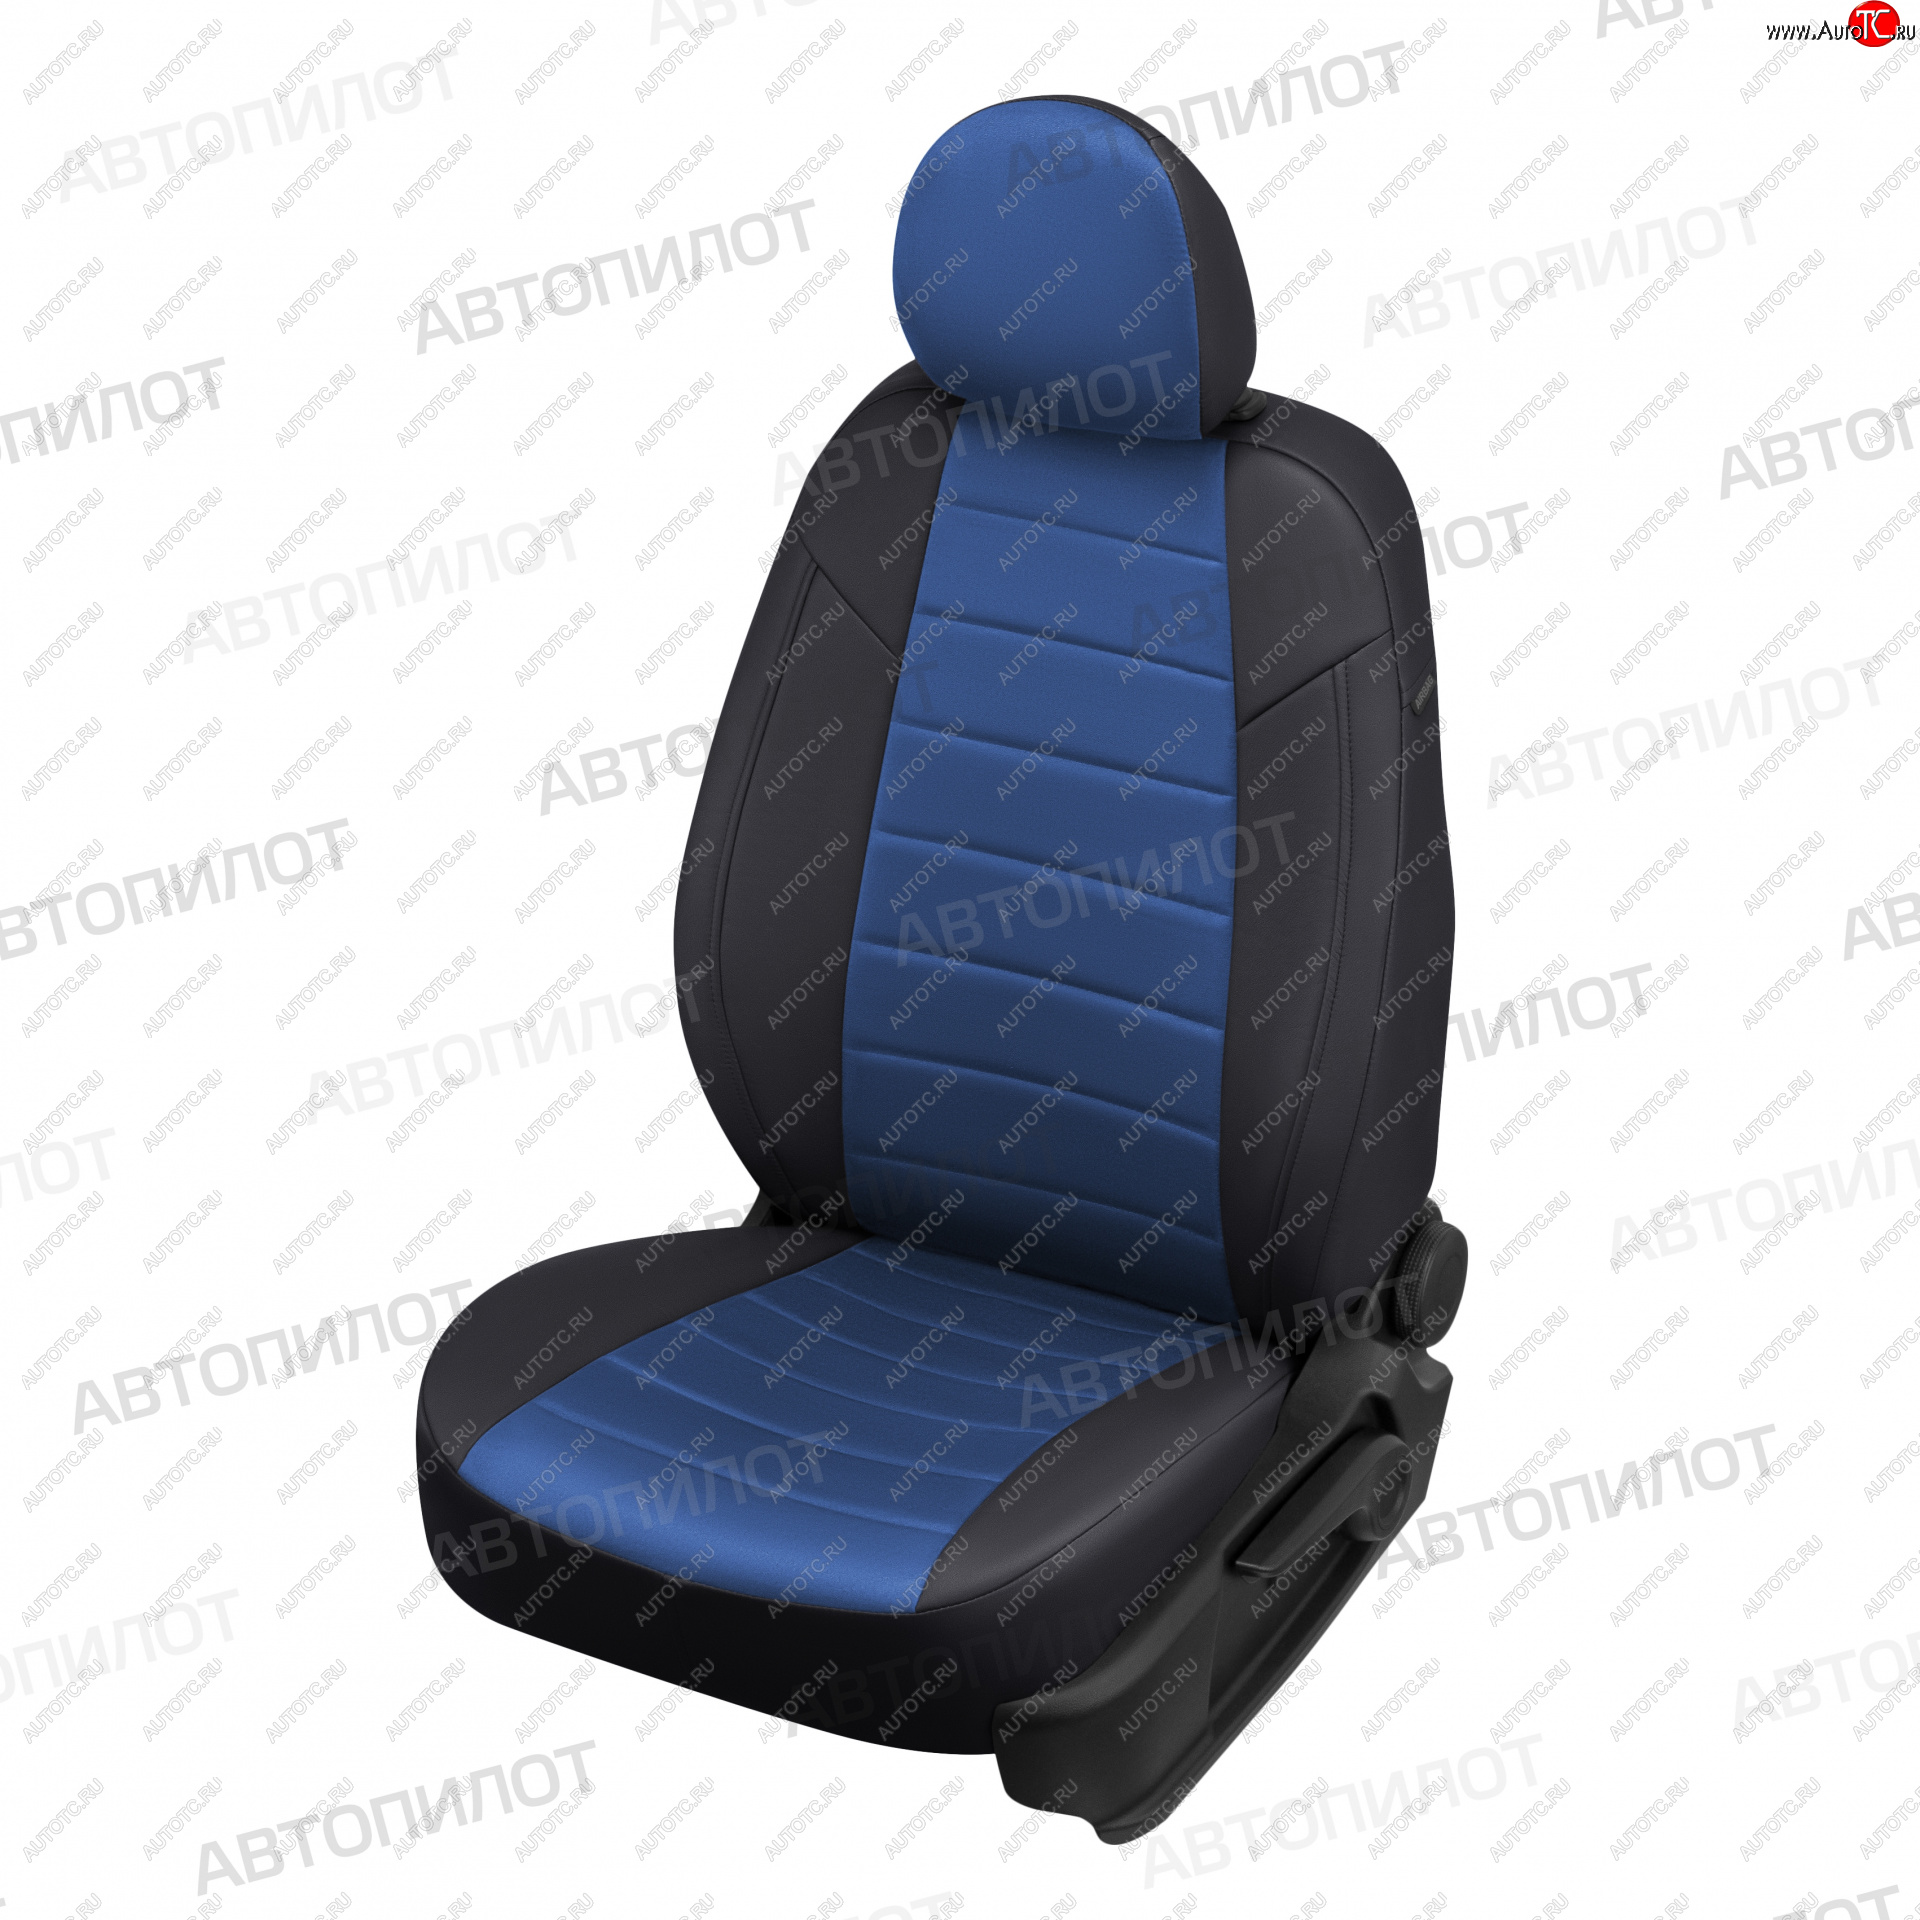 21 599 р. Чехлы сидений (9 мест, экокожа/алькантара) Автопилот  Ford Transit  3 (2006-2014) (черный/синий)